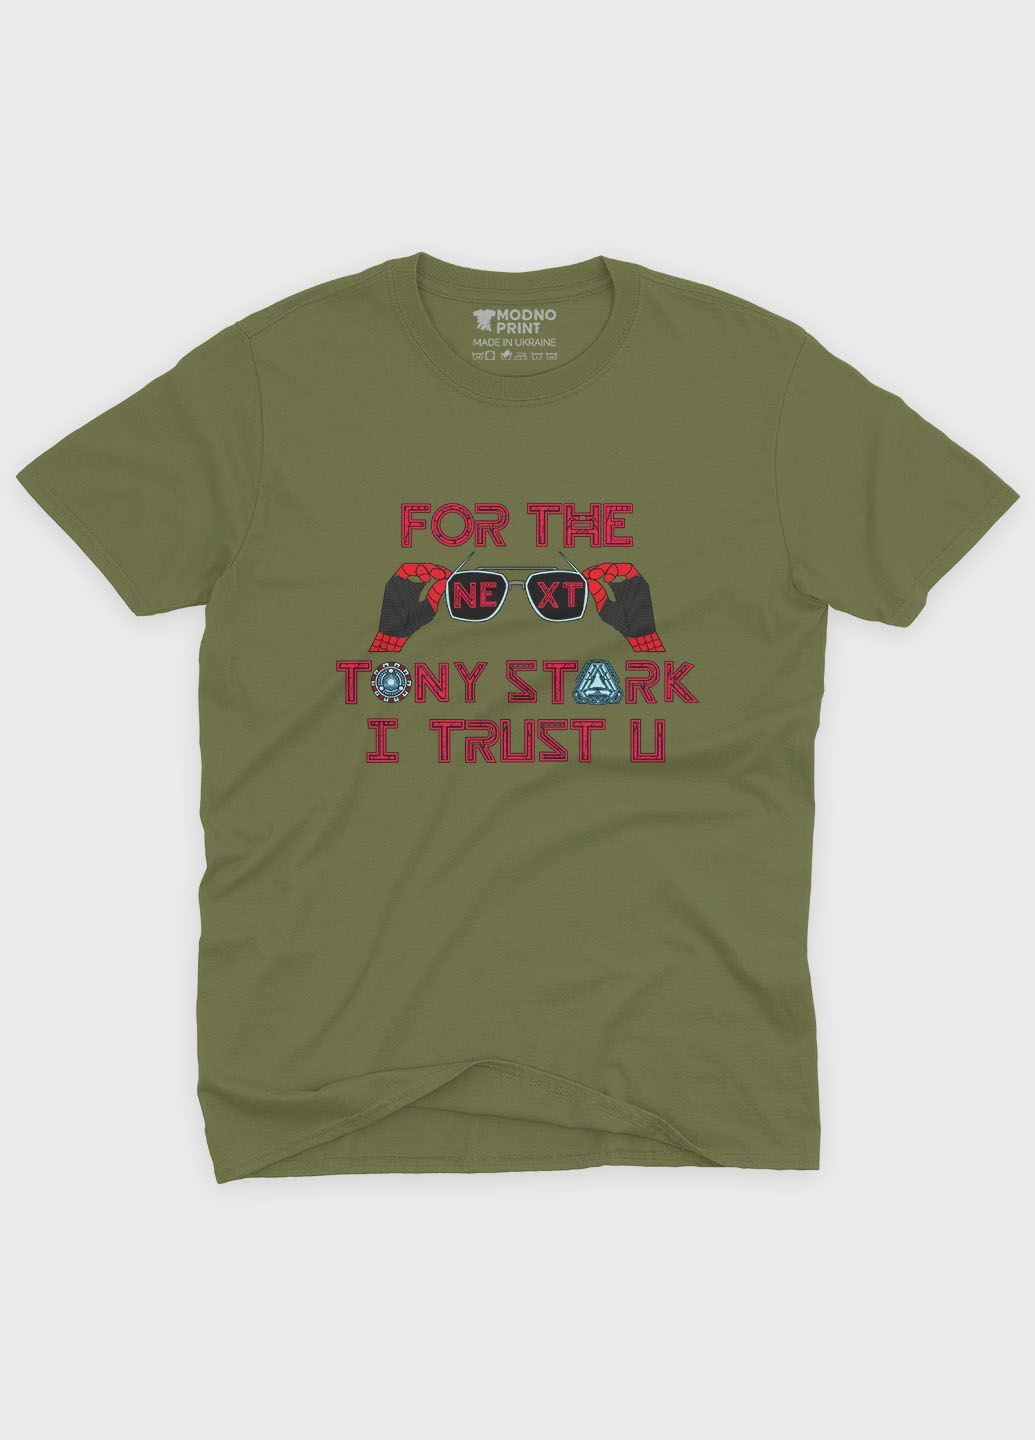 Хаки (оливковая) летняя женская футболка с принтом супергероя - железный человек (ts001-1-hgr-006-016-018-f) Modno